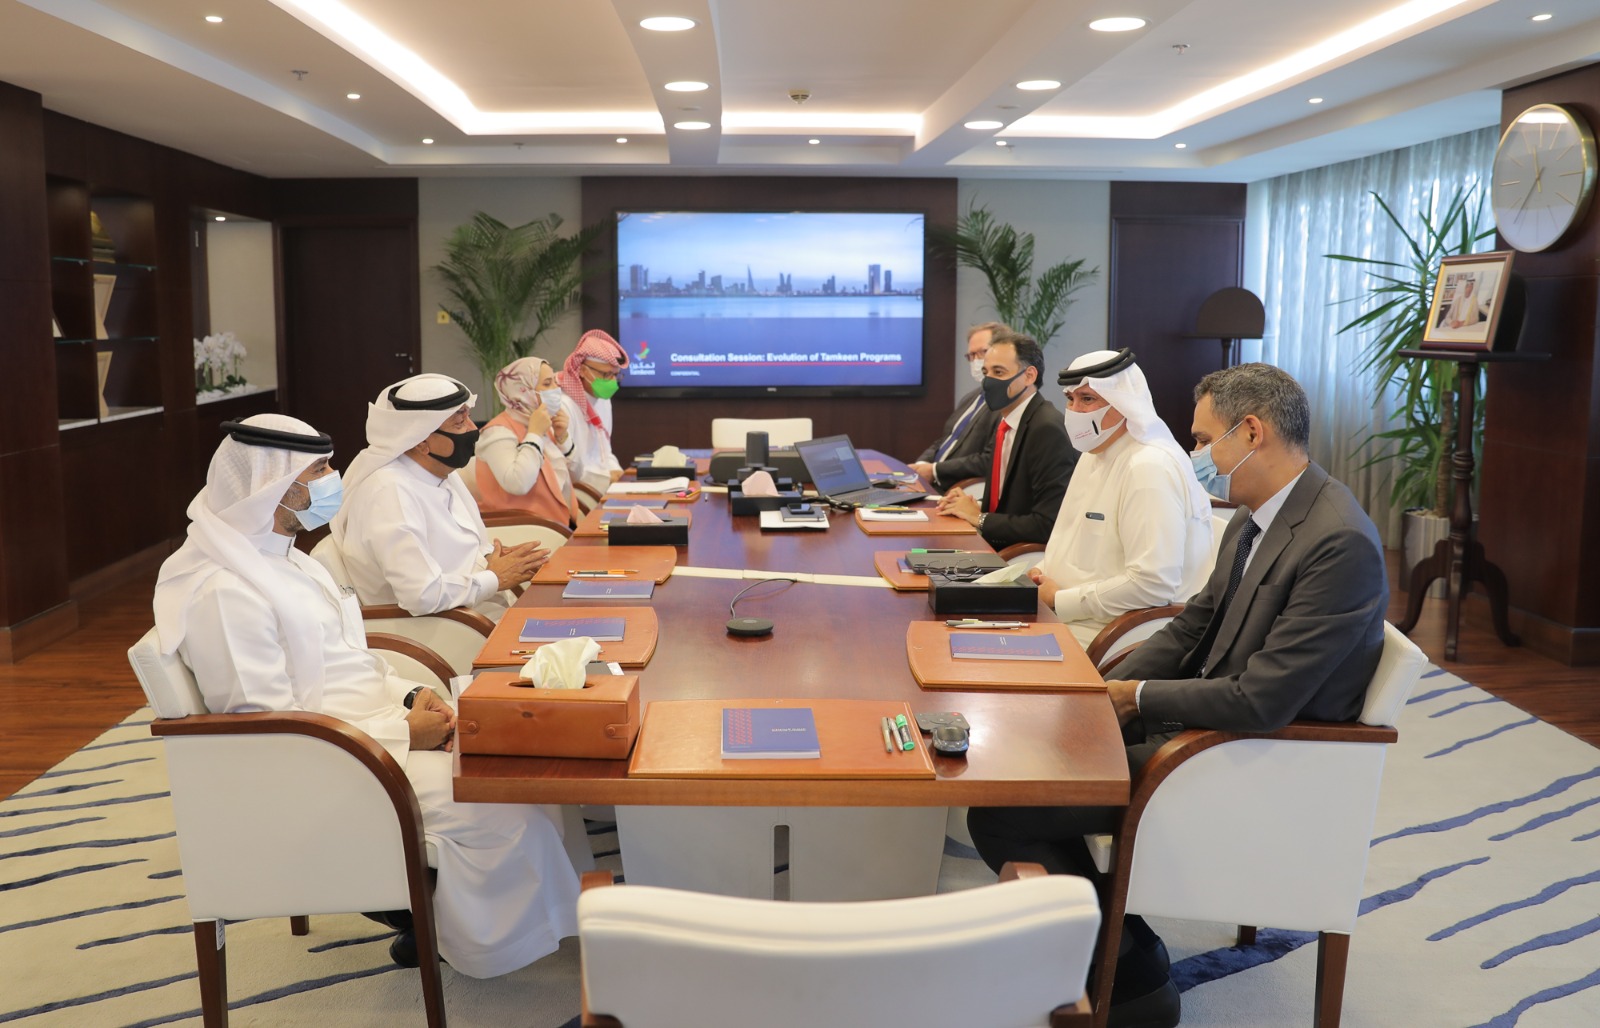 في لقاء خاص مع غرفة تجارة وصناعة البحرين “تمكين”: نؤكد على شراكتنا الإستراتيجية مع الغرفة لتعزيز مستويات الإنتاجية والتوسع والتنافسية العالمية للقطاع الخاص والعامل البحريني